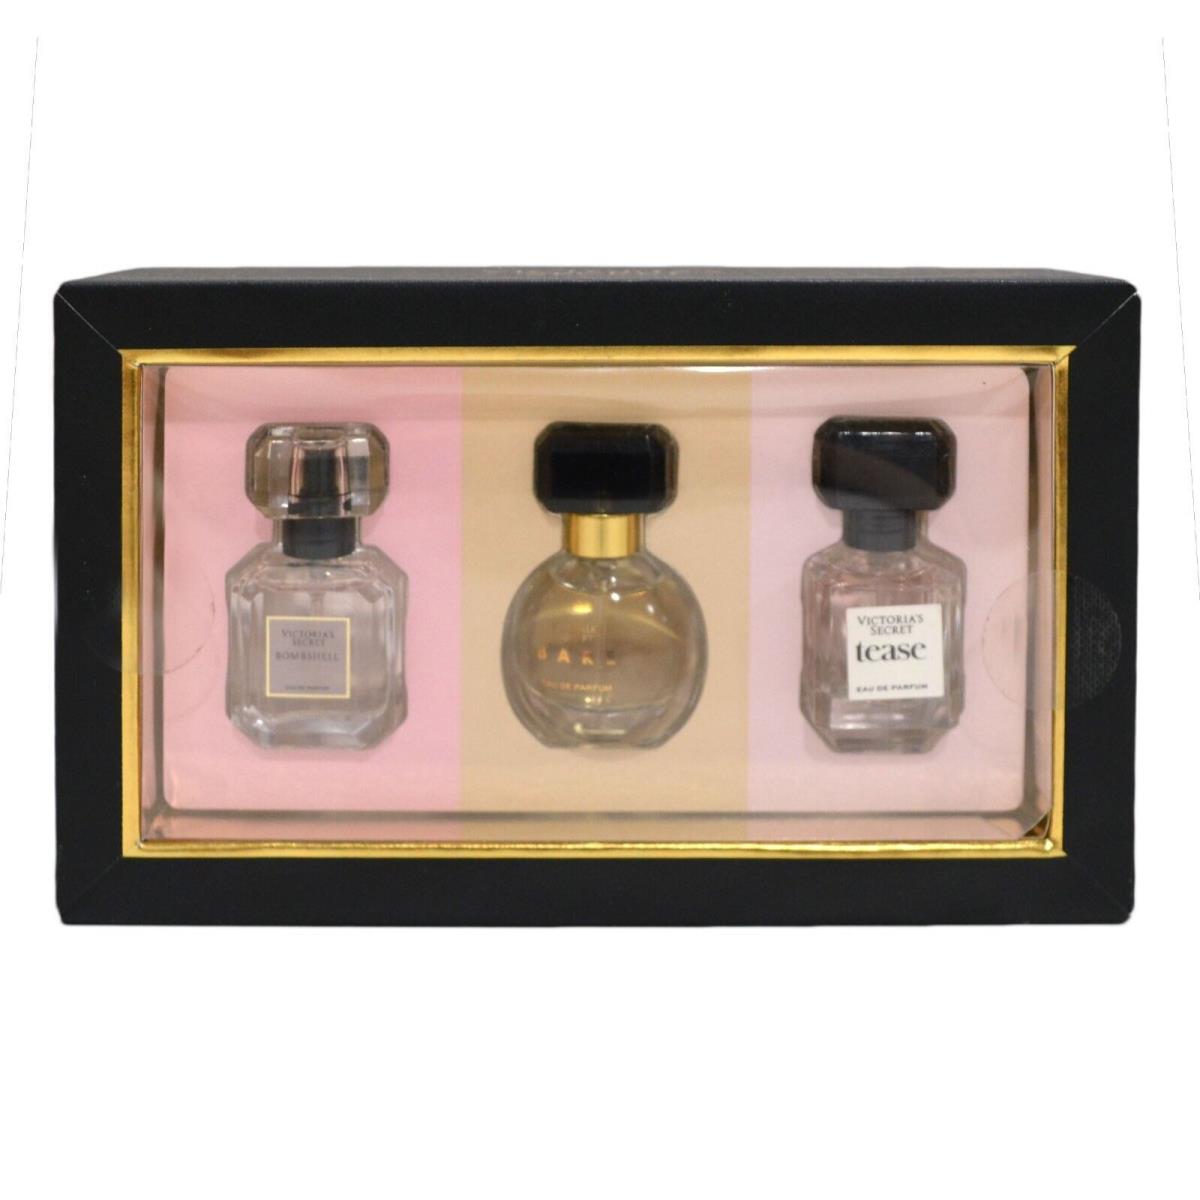 Victoria`s Secret Travel Size Perfume Gift Set 3 Piece Eau De Parfum Giftset Edp